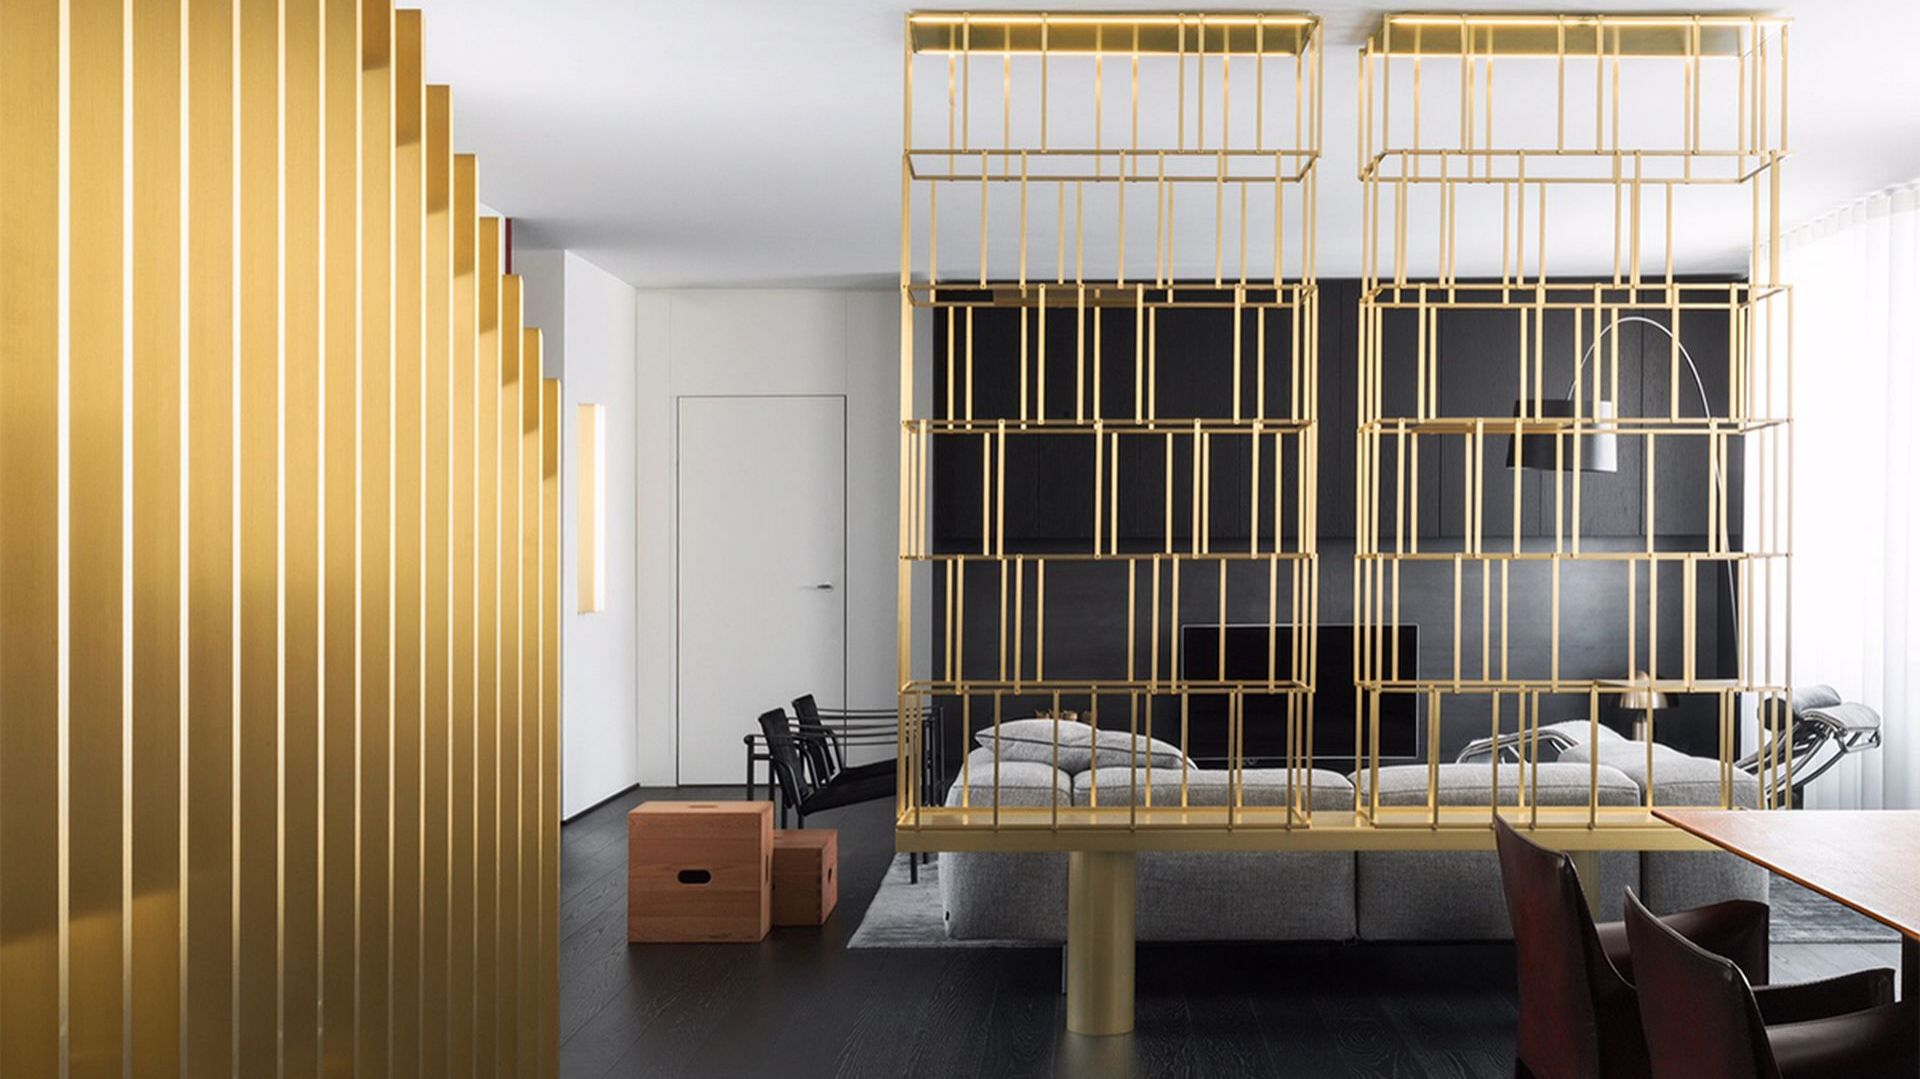 Mediolański apartament zaprojektowany przez duet uznanych architektów. Piękny design, nowoczesne meble